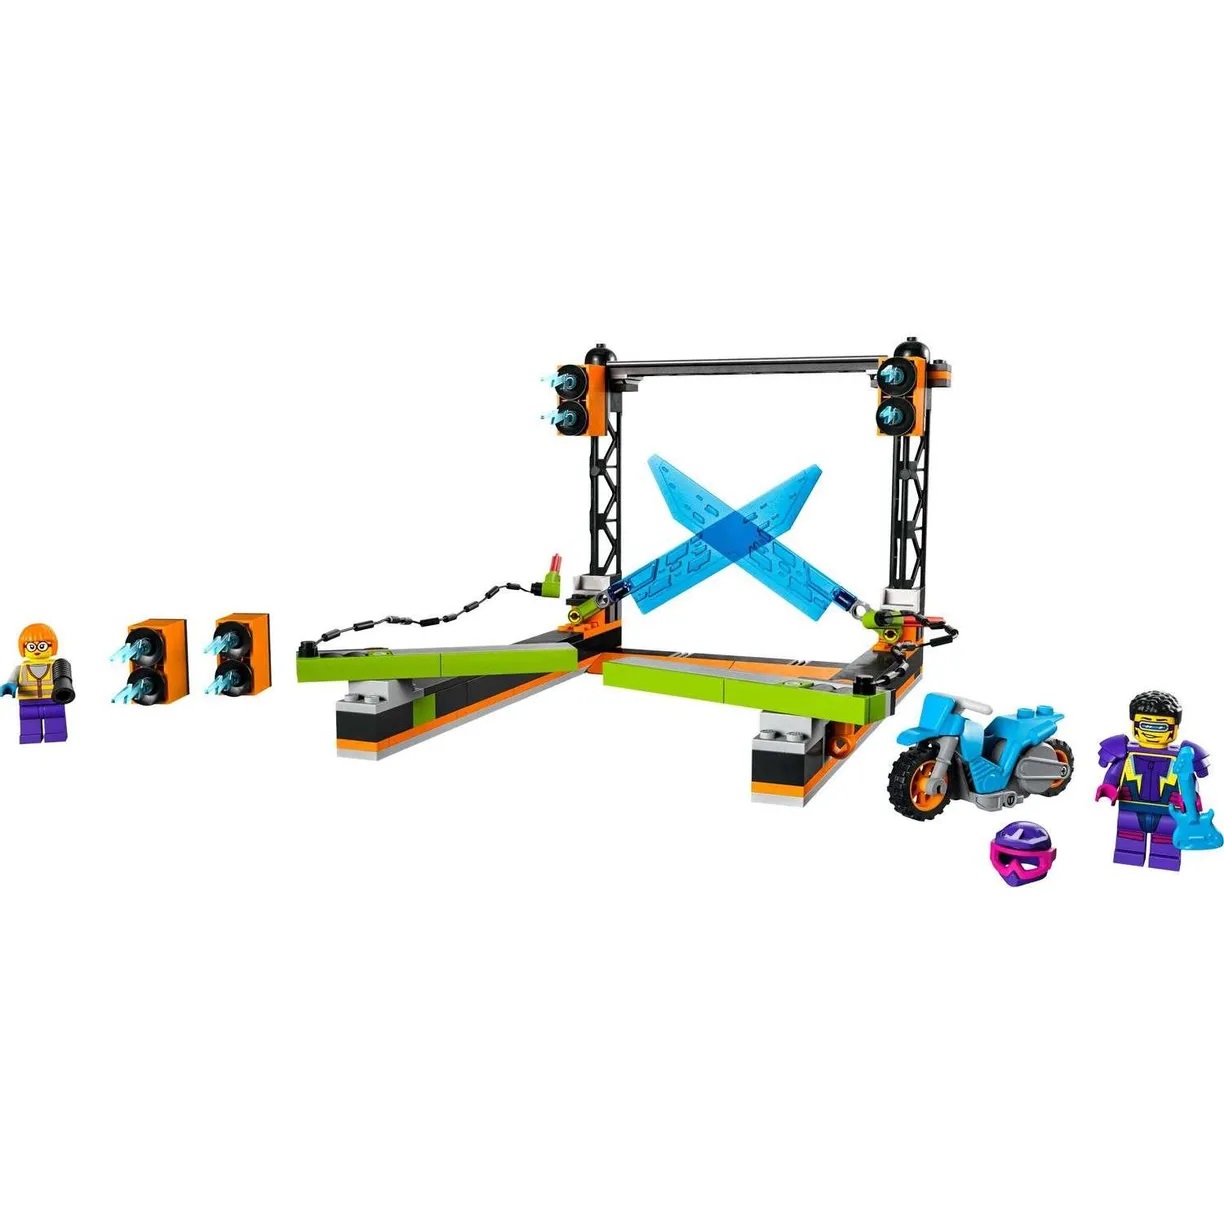 Lego City 60340 Трюковое испытание - Лезвие